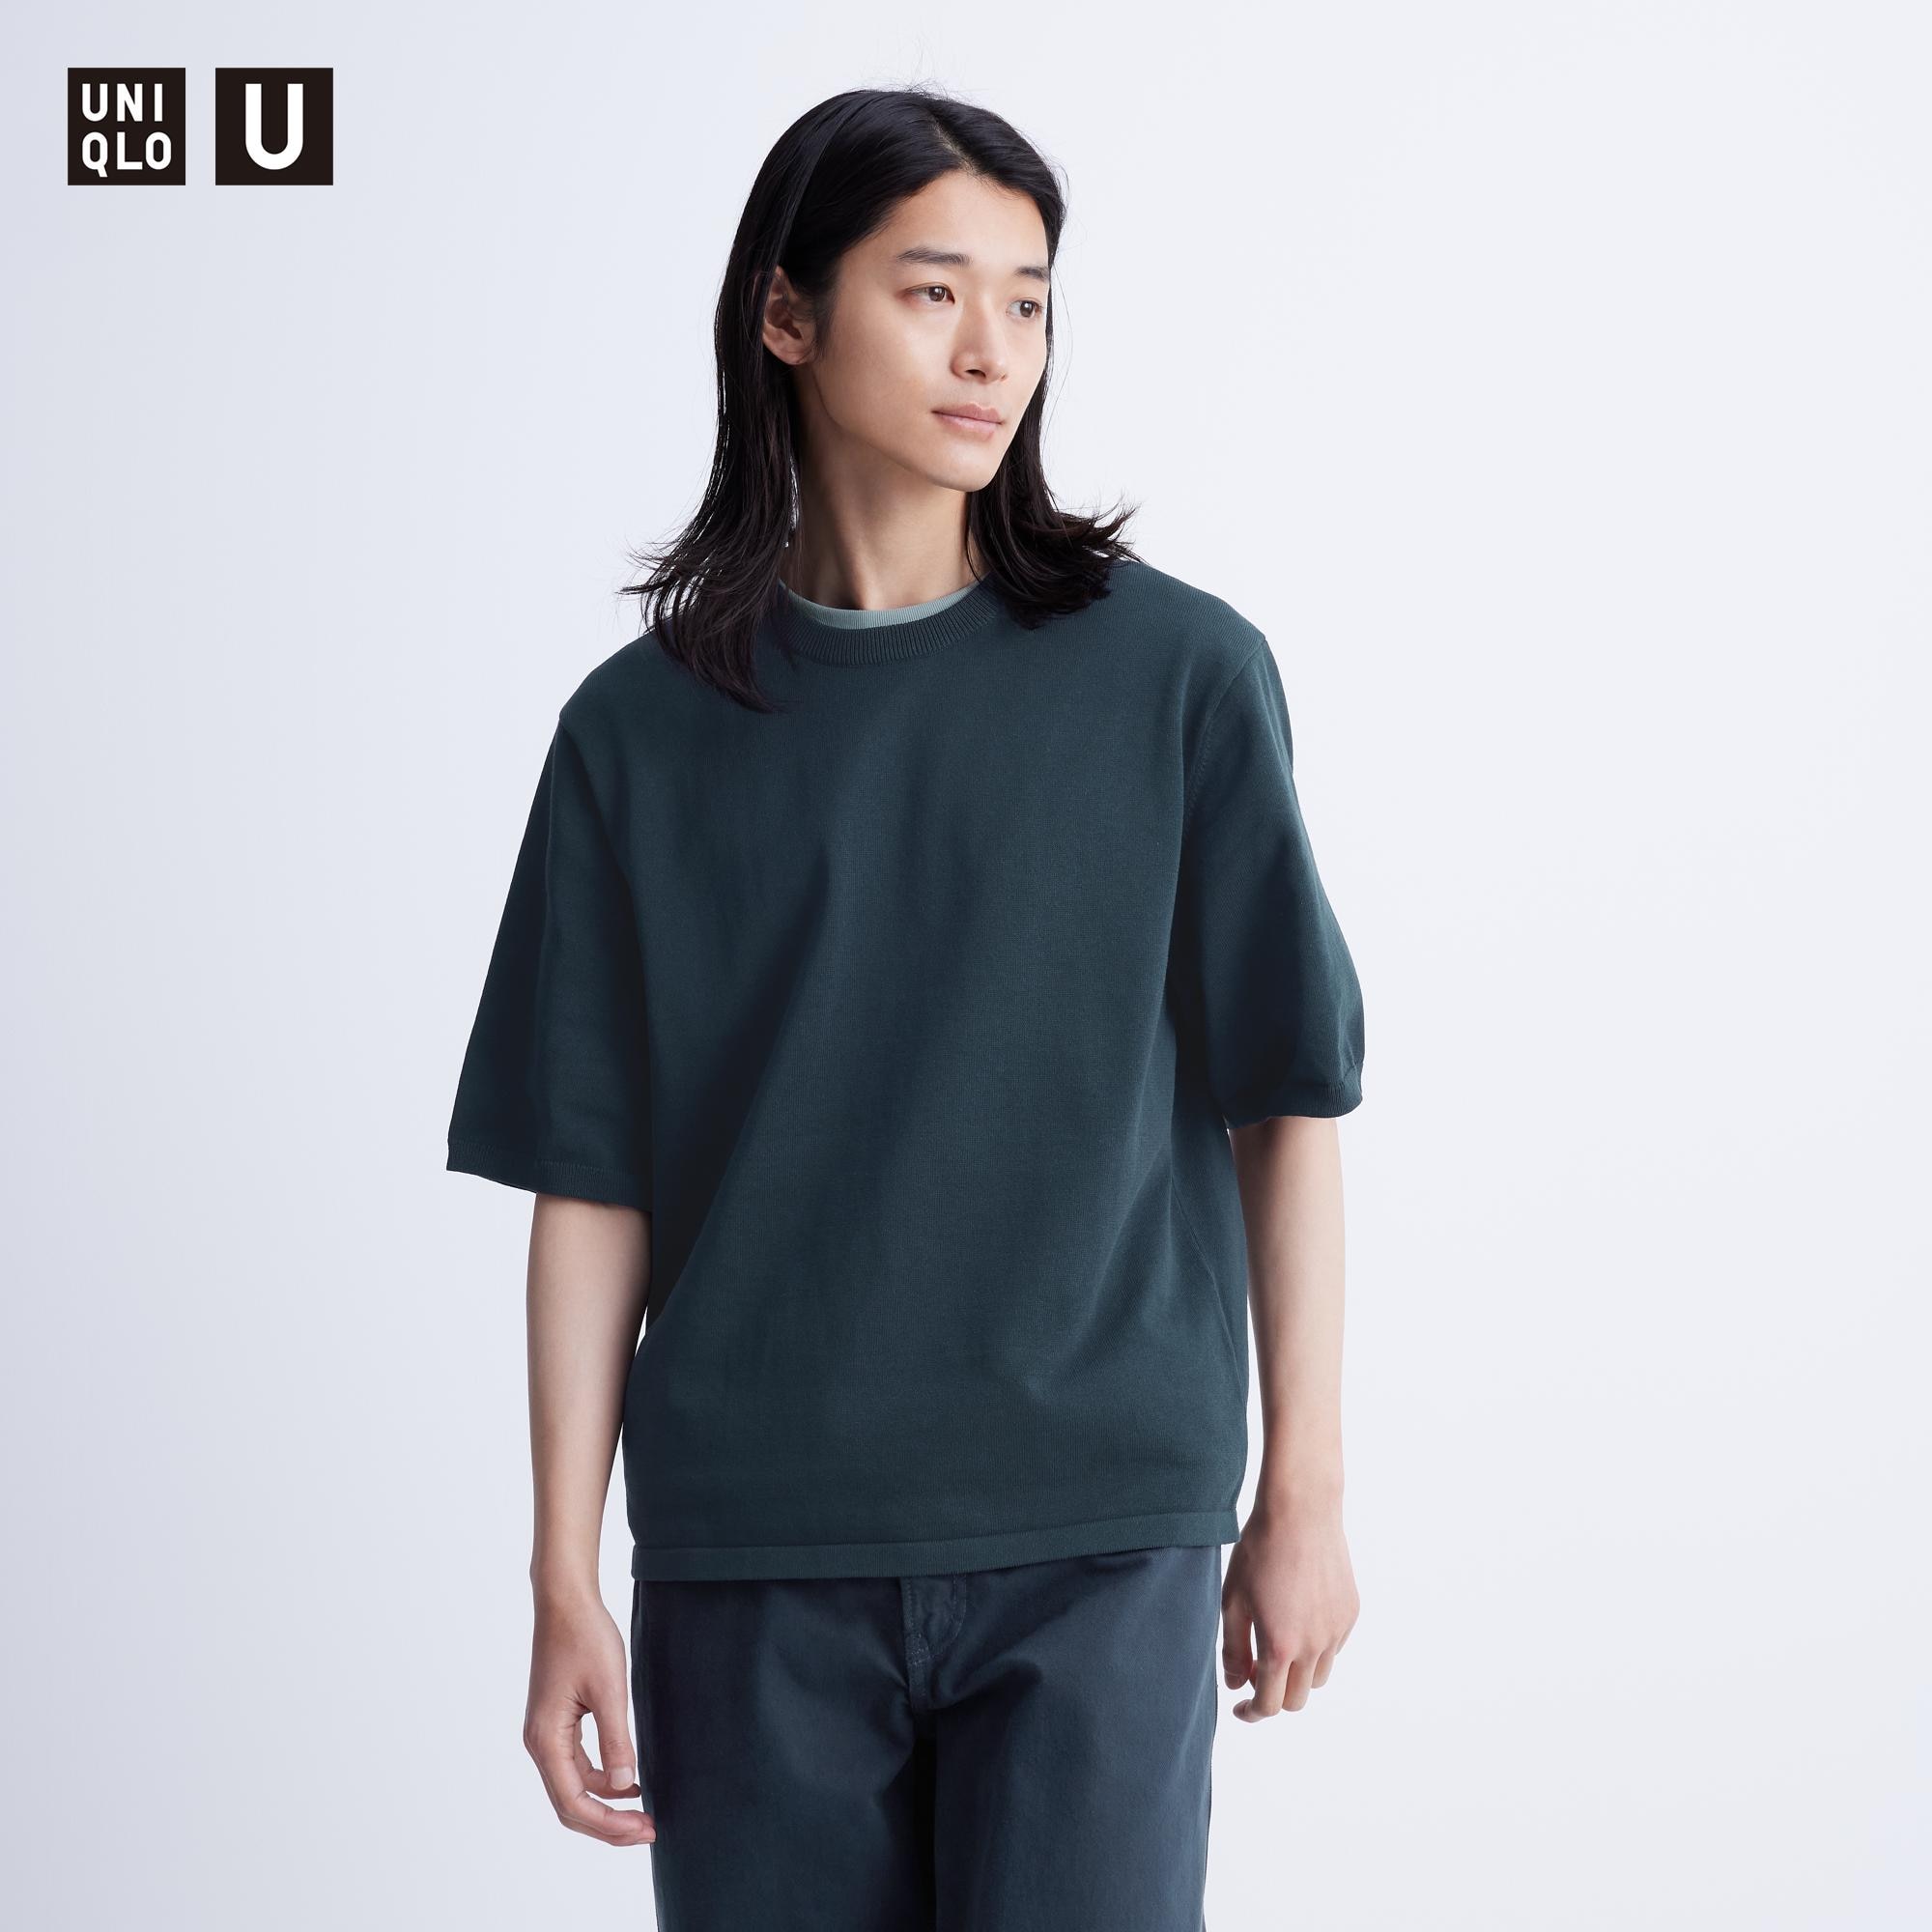 メンズ ニット セーター 人気関連商品の口コミ・評判 | ユニクロ